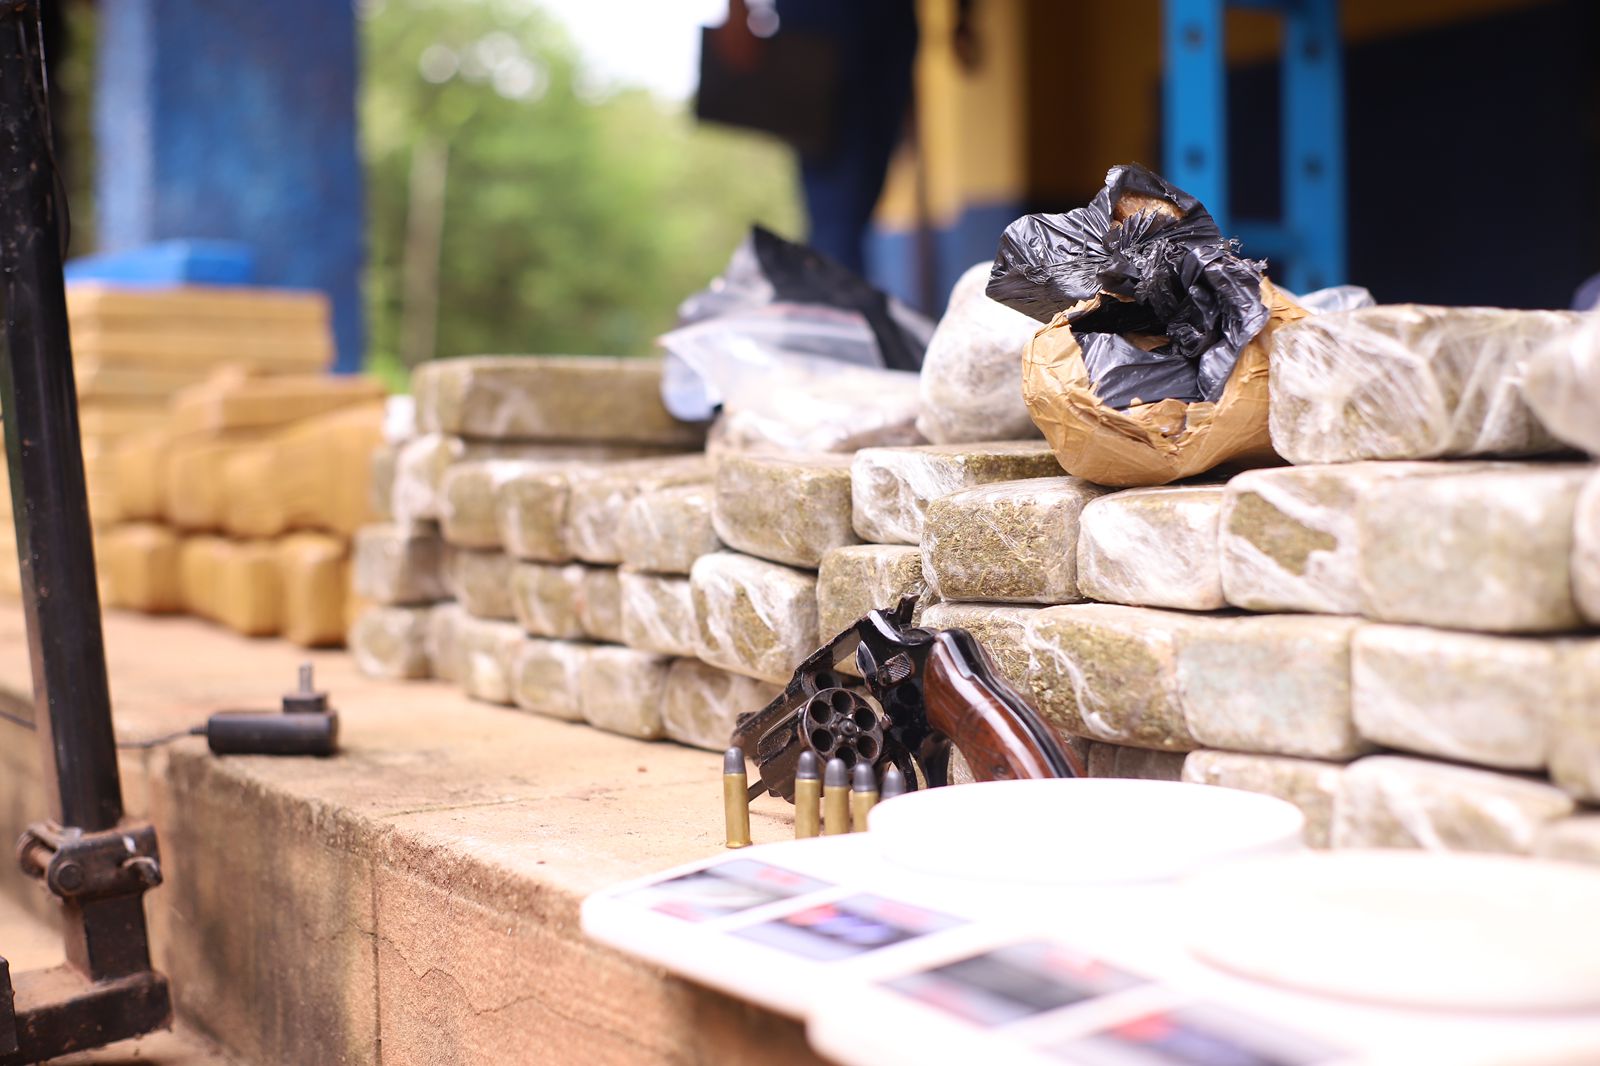 Secretaria de Segurança encontra depósito de drogas e munições em Timon - Foto: Divulgação/SSP-PI